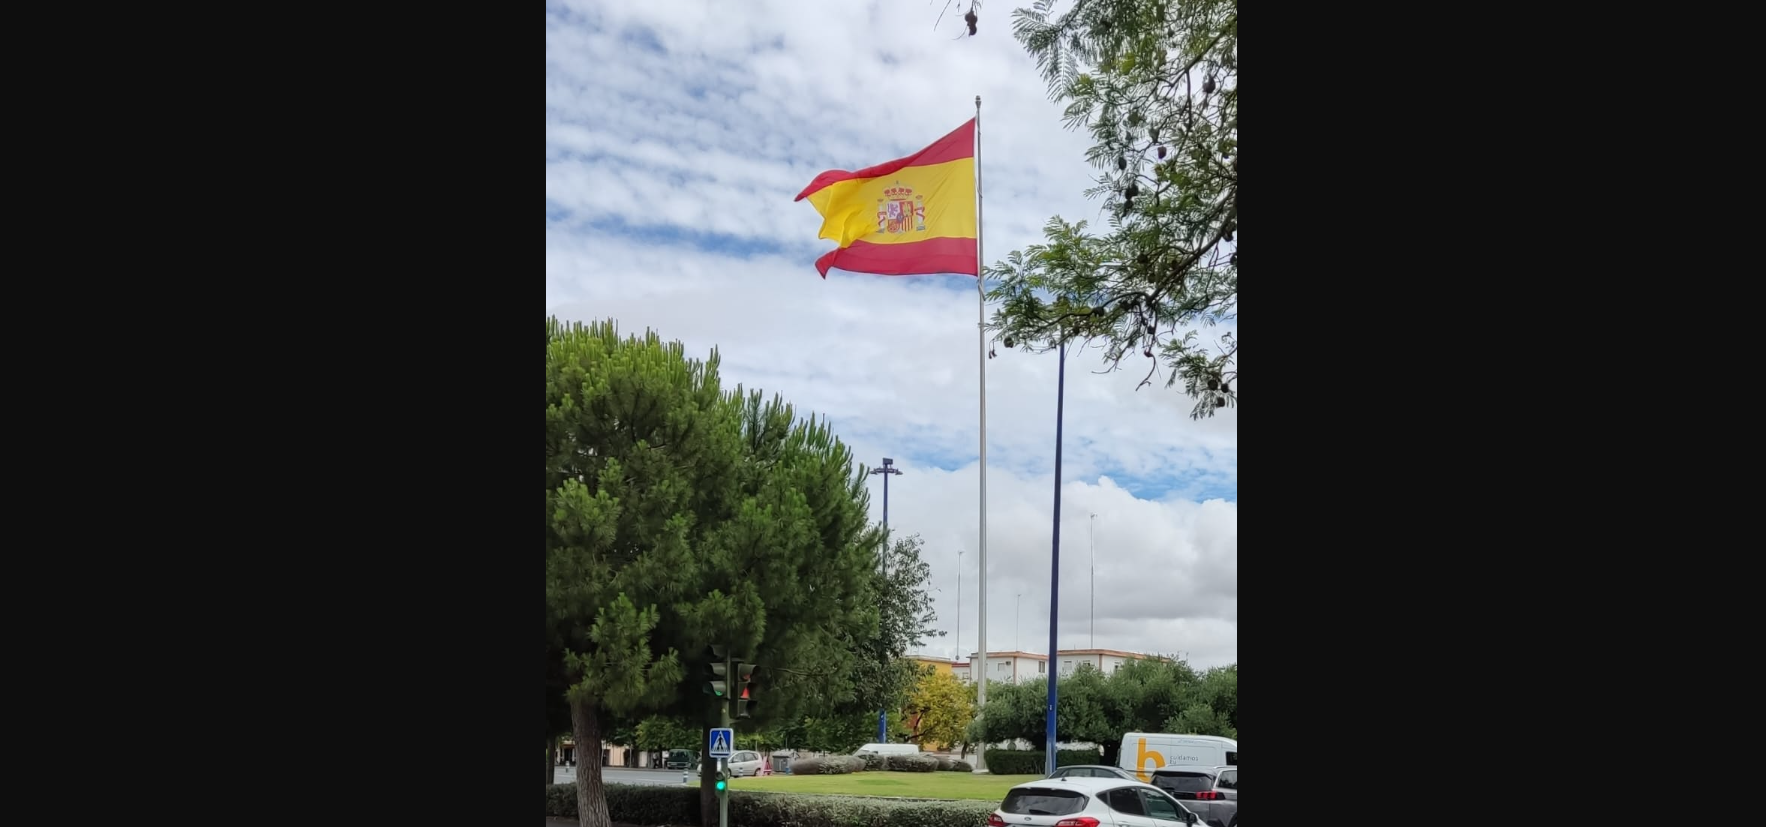 La bandera de España, ahora situada en la avenida de Andalucía, en una imagen subida a redes por Antonio Jesús Acevedo.